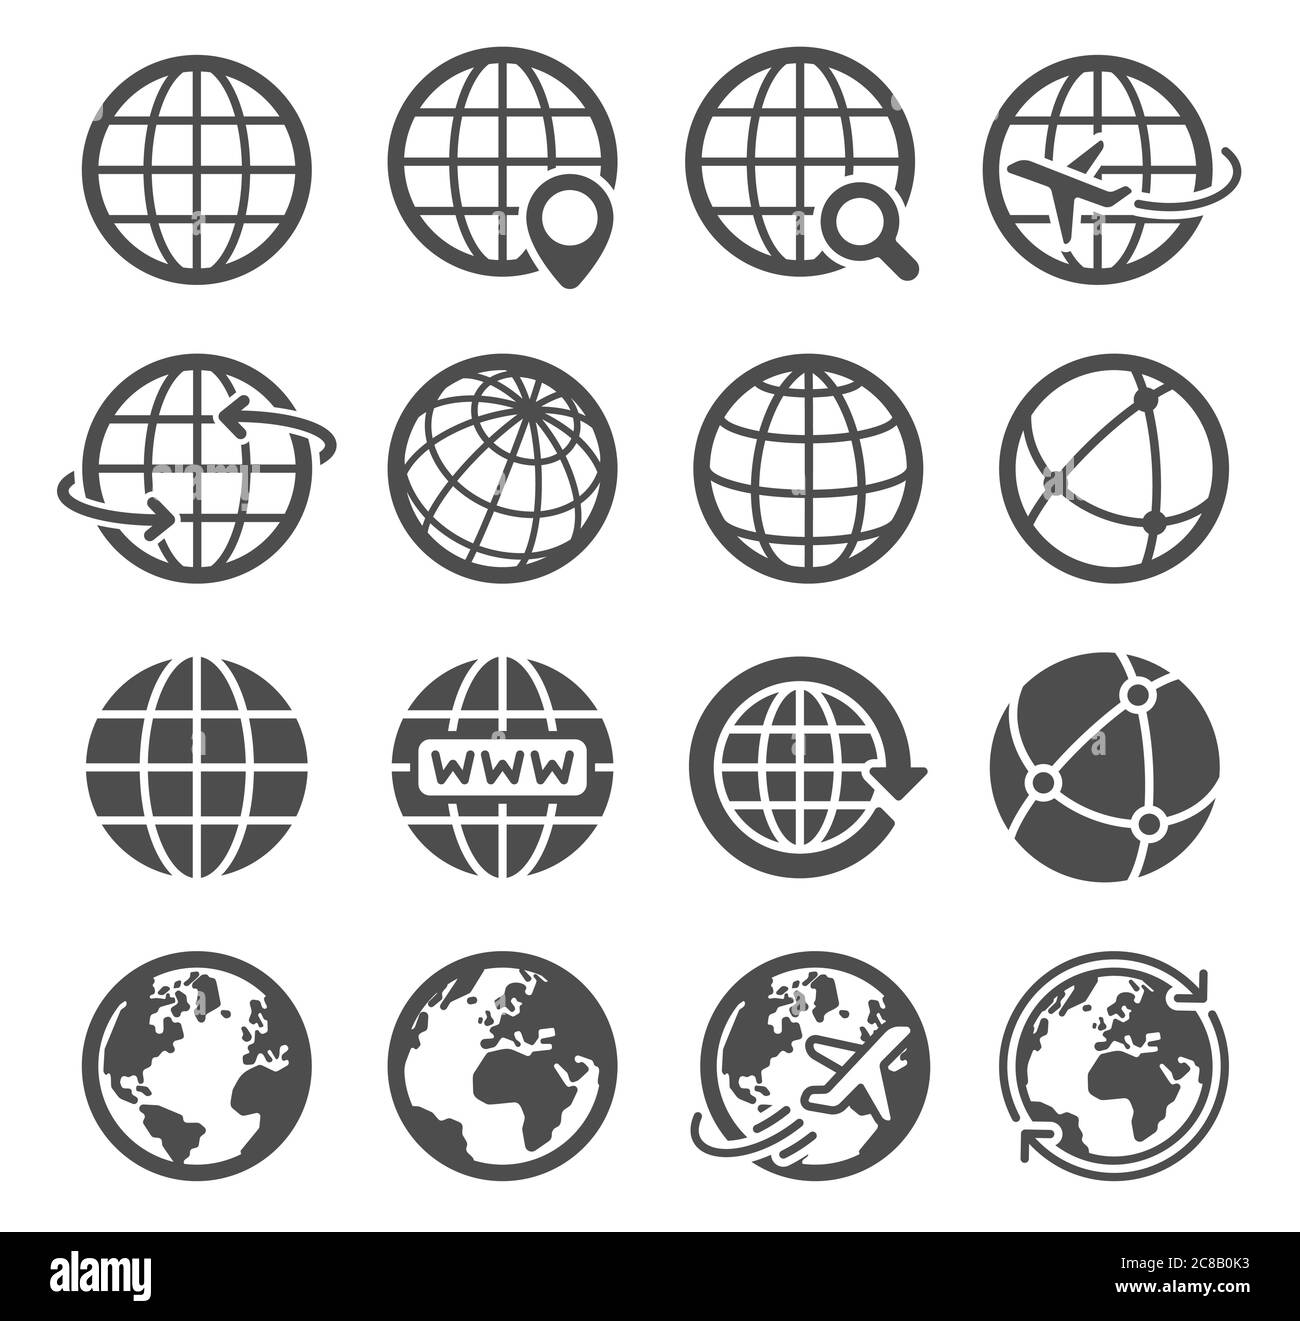 Icone globo terrestre. Mappa mondiale pianeta sferico, geografia contour continente, orbita mondiale comunicazione globale turismo logo simboli vettoriali. Internet Illustrazione Vettoriale